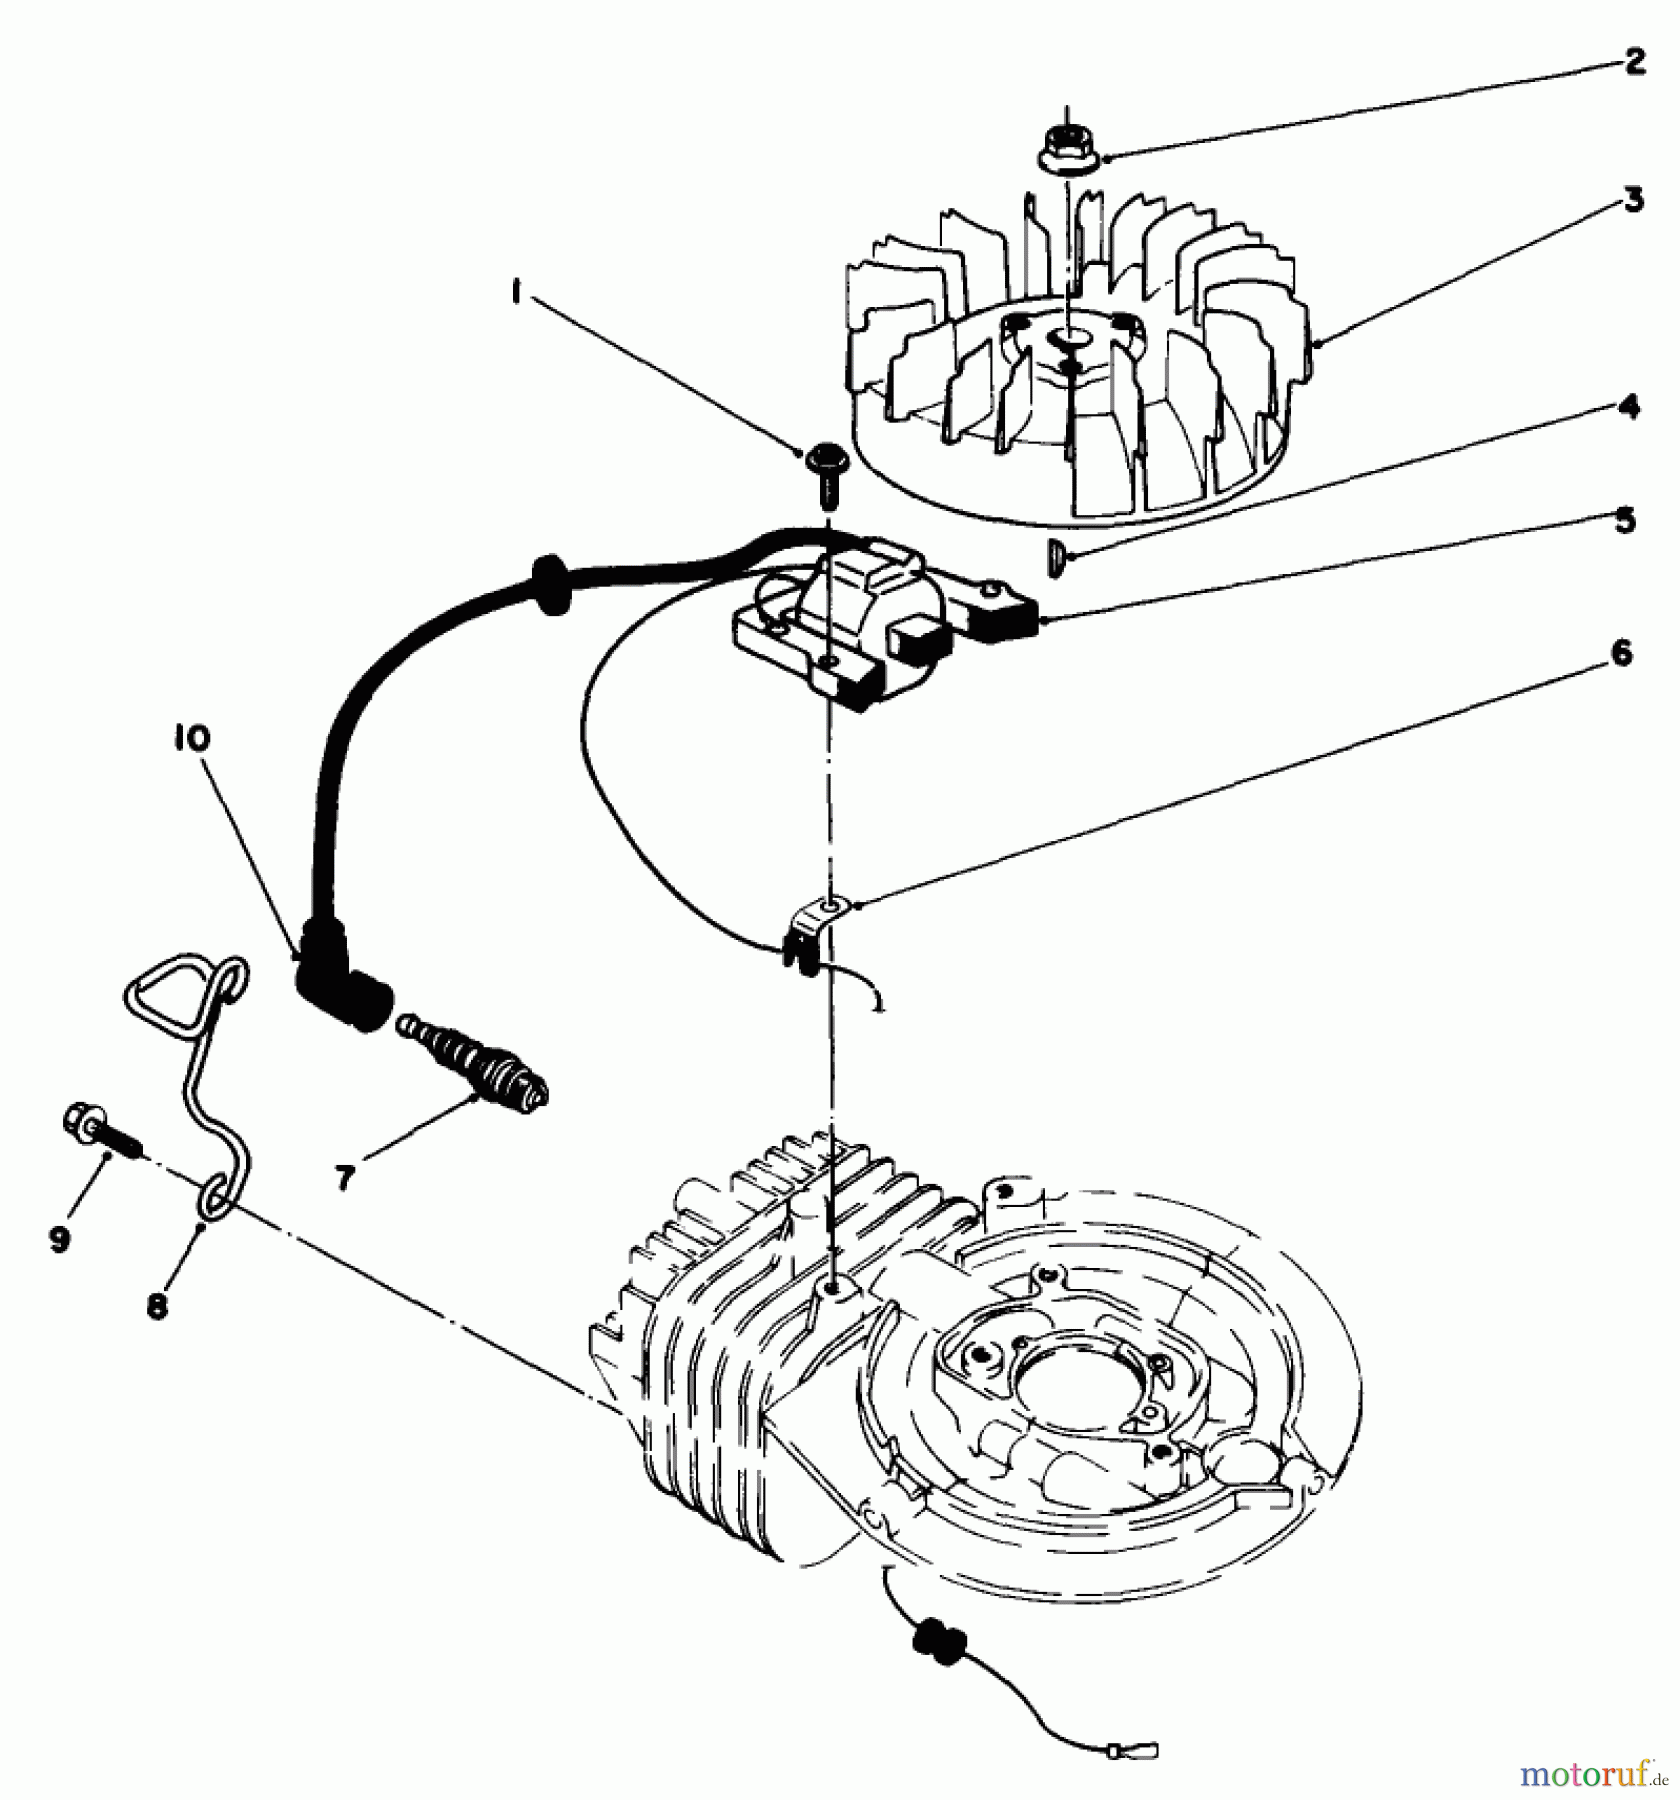  Toro Neu Mowers, Walk-Behind Seite 2 22025C - Toro Lawnmower, 1988 (8000001-8999999) ENGINE ASSEMBLY MODEL NO. 47PH7 #2